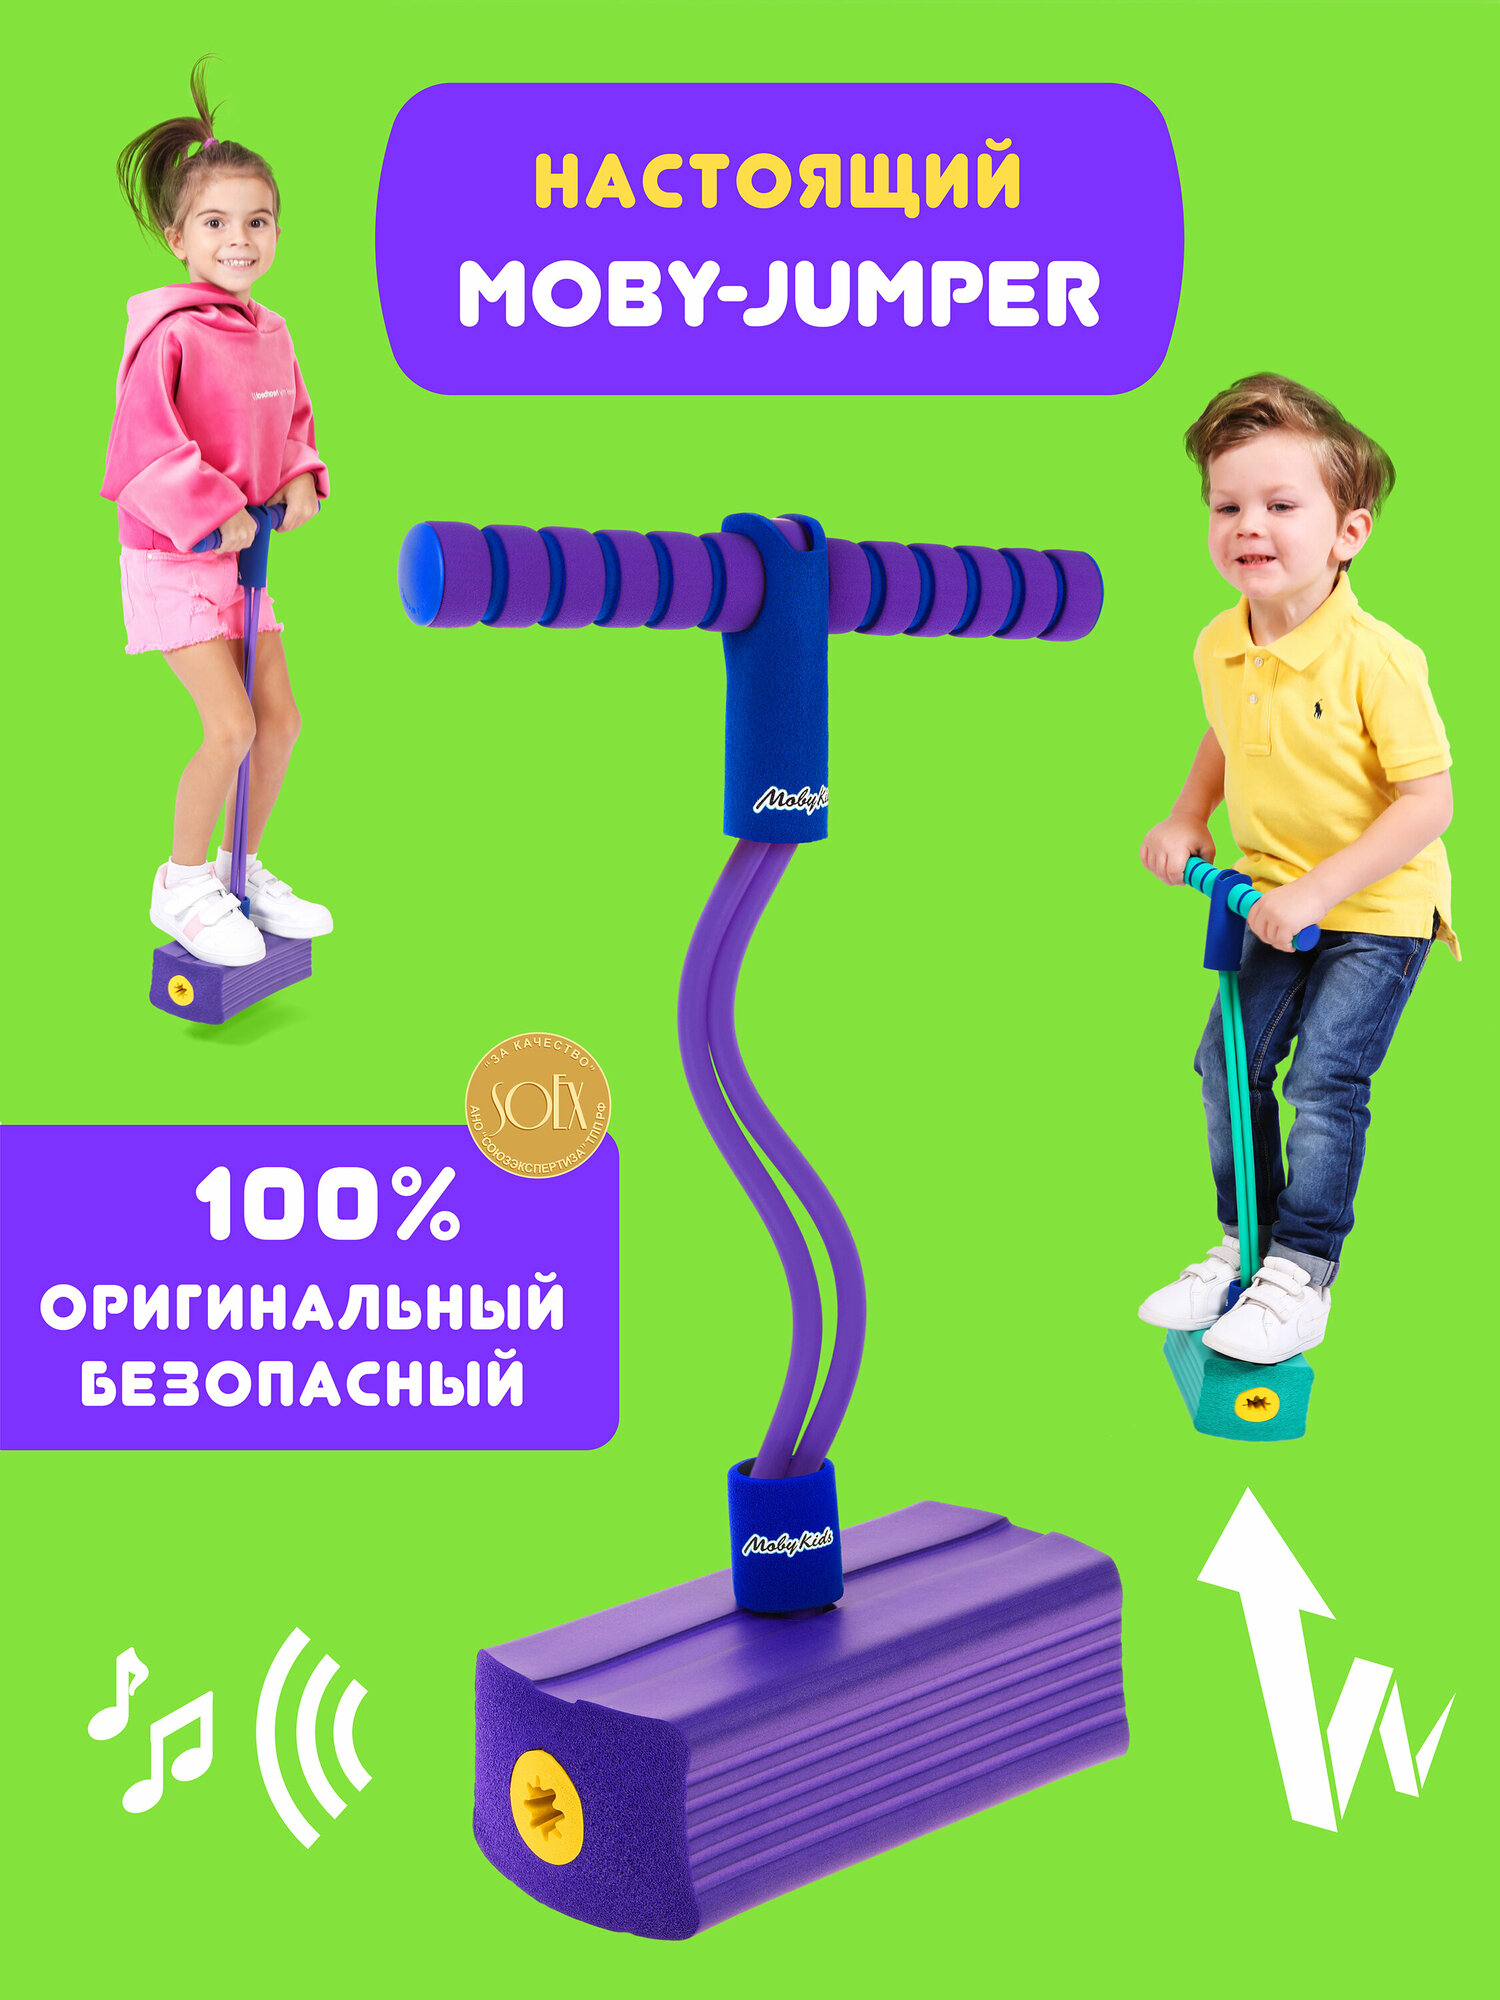 Тренажер для прыжков Moby-Jumper со звуком, фиолет. (68551)